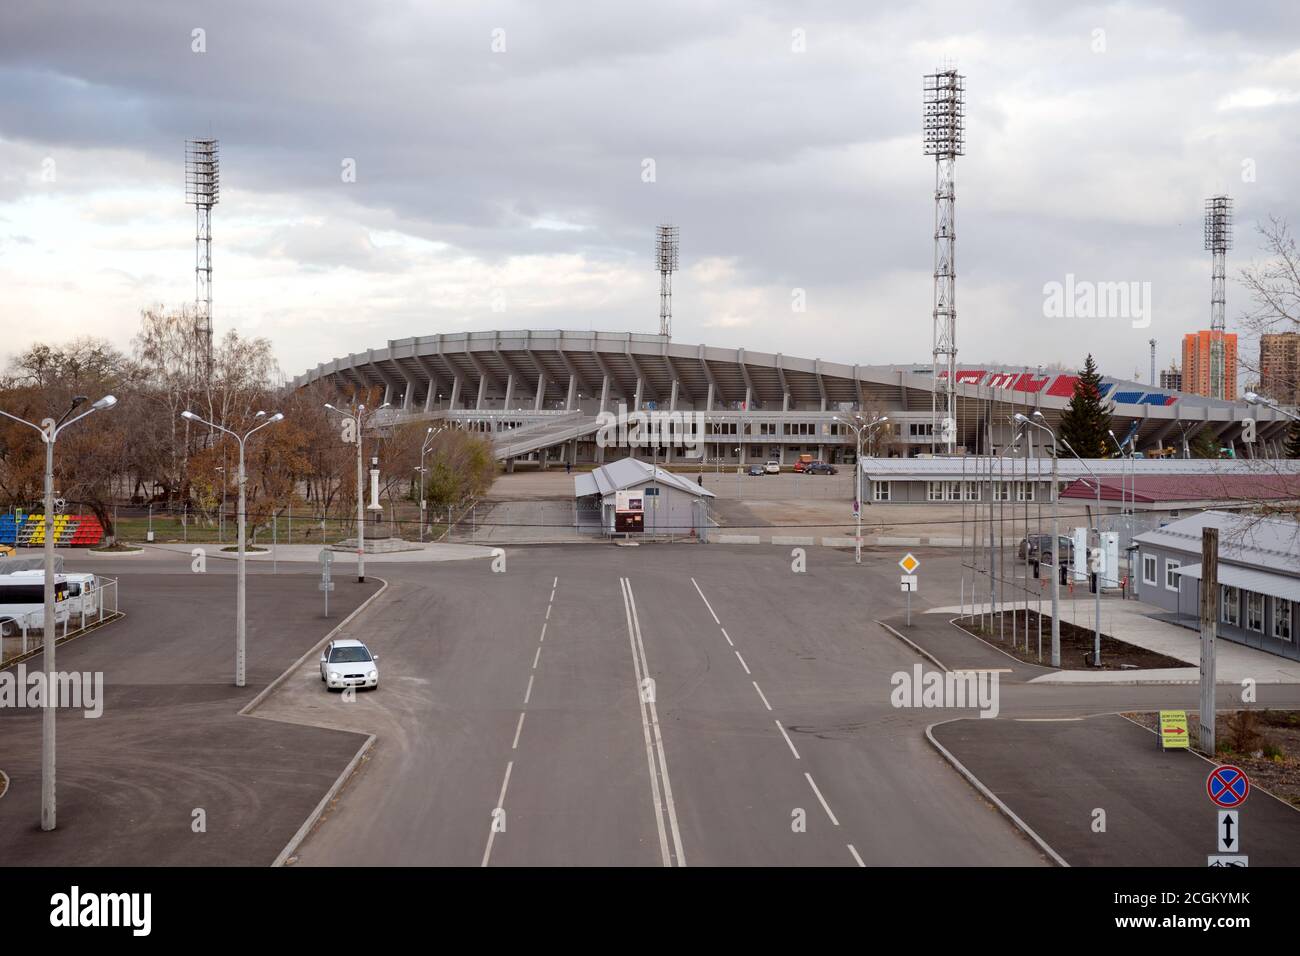 Draufsicht auf das Stadion Jenissei, Austragungsort der Winter Universiade 2019, auf der Insel der Erholung in Krasnojarsk. Stockfoto